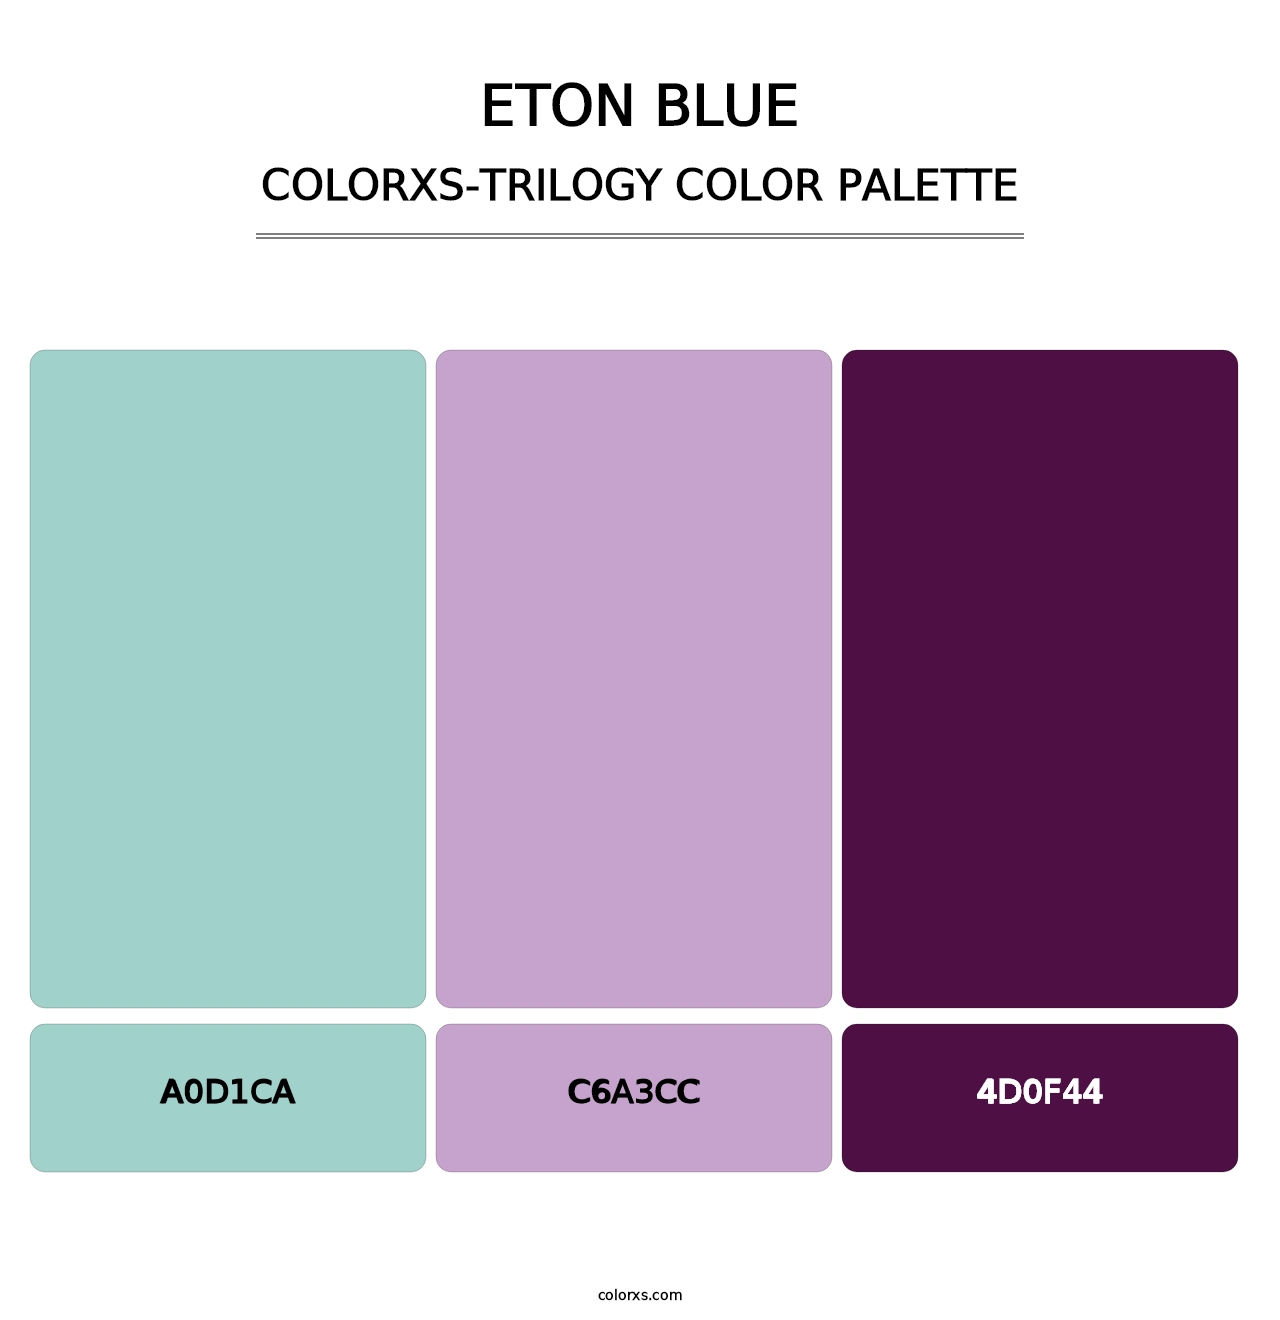 Eton blue - Colorxs Trilogy Palette